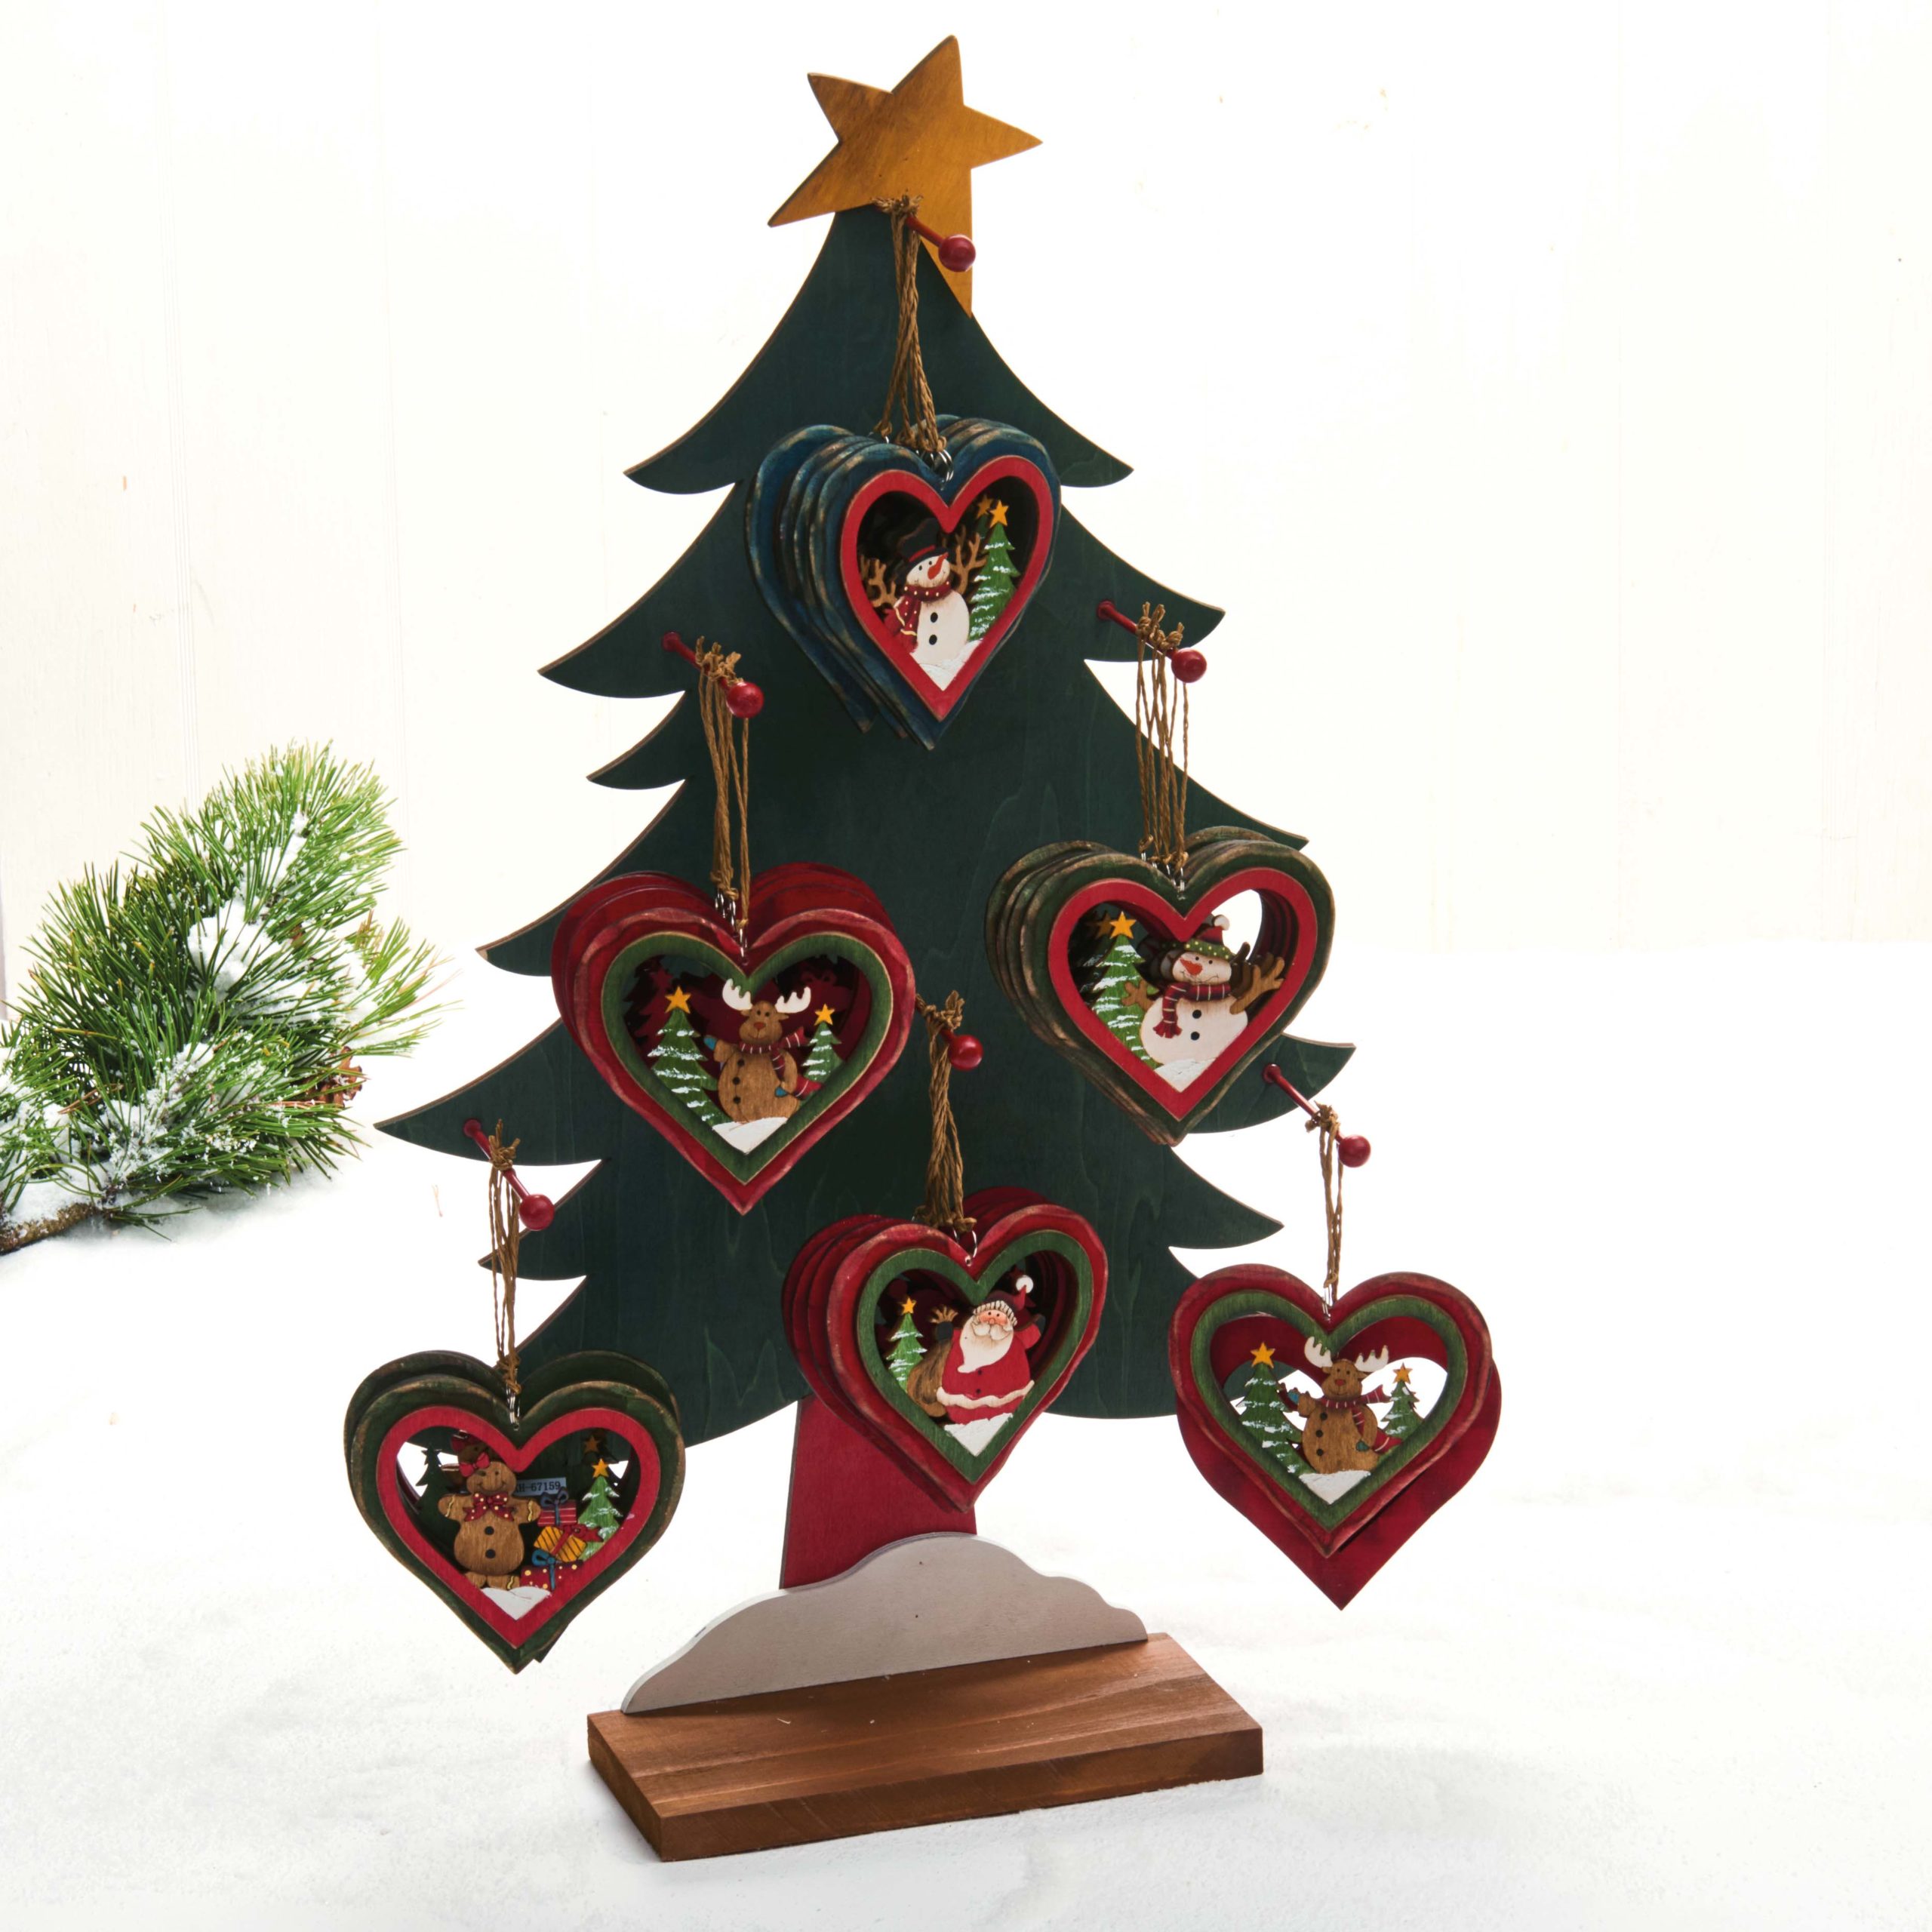 Hjertetræfigur til juletræet – Rensdyr med lidt sne